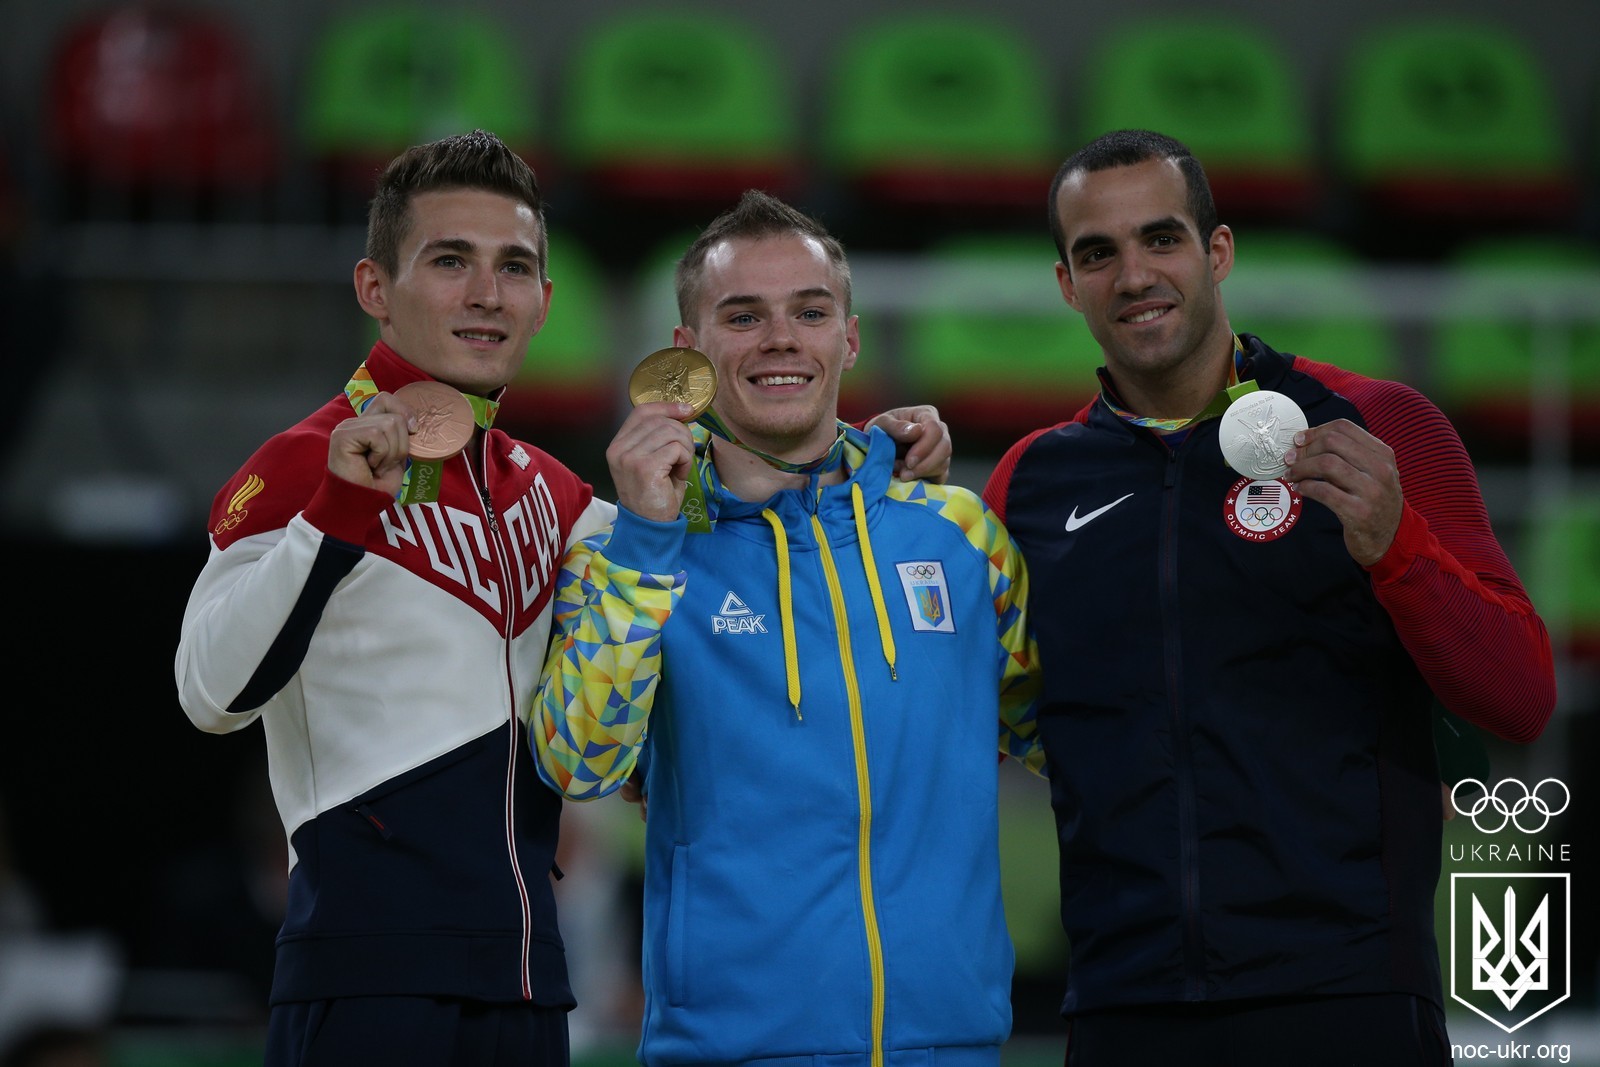 Первое золото для Украины в Рио завоевал Олег Верняев в спортивной гимнастике. Это произошло 16 августа